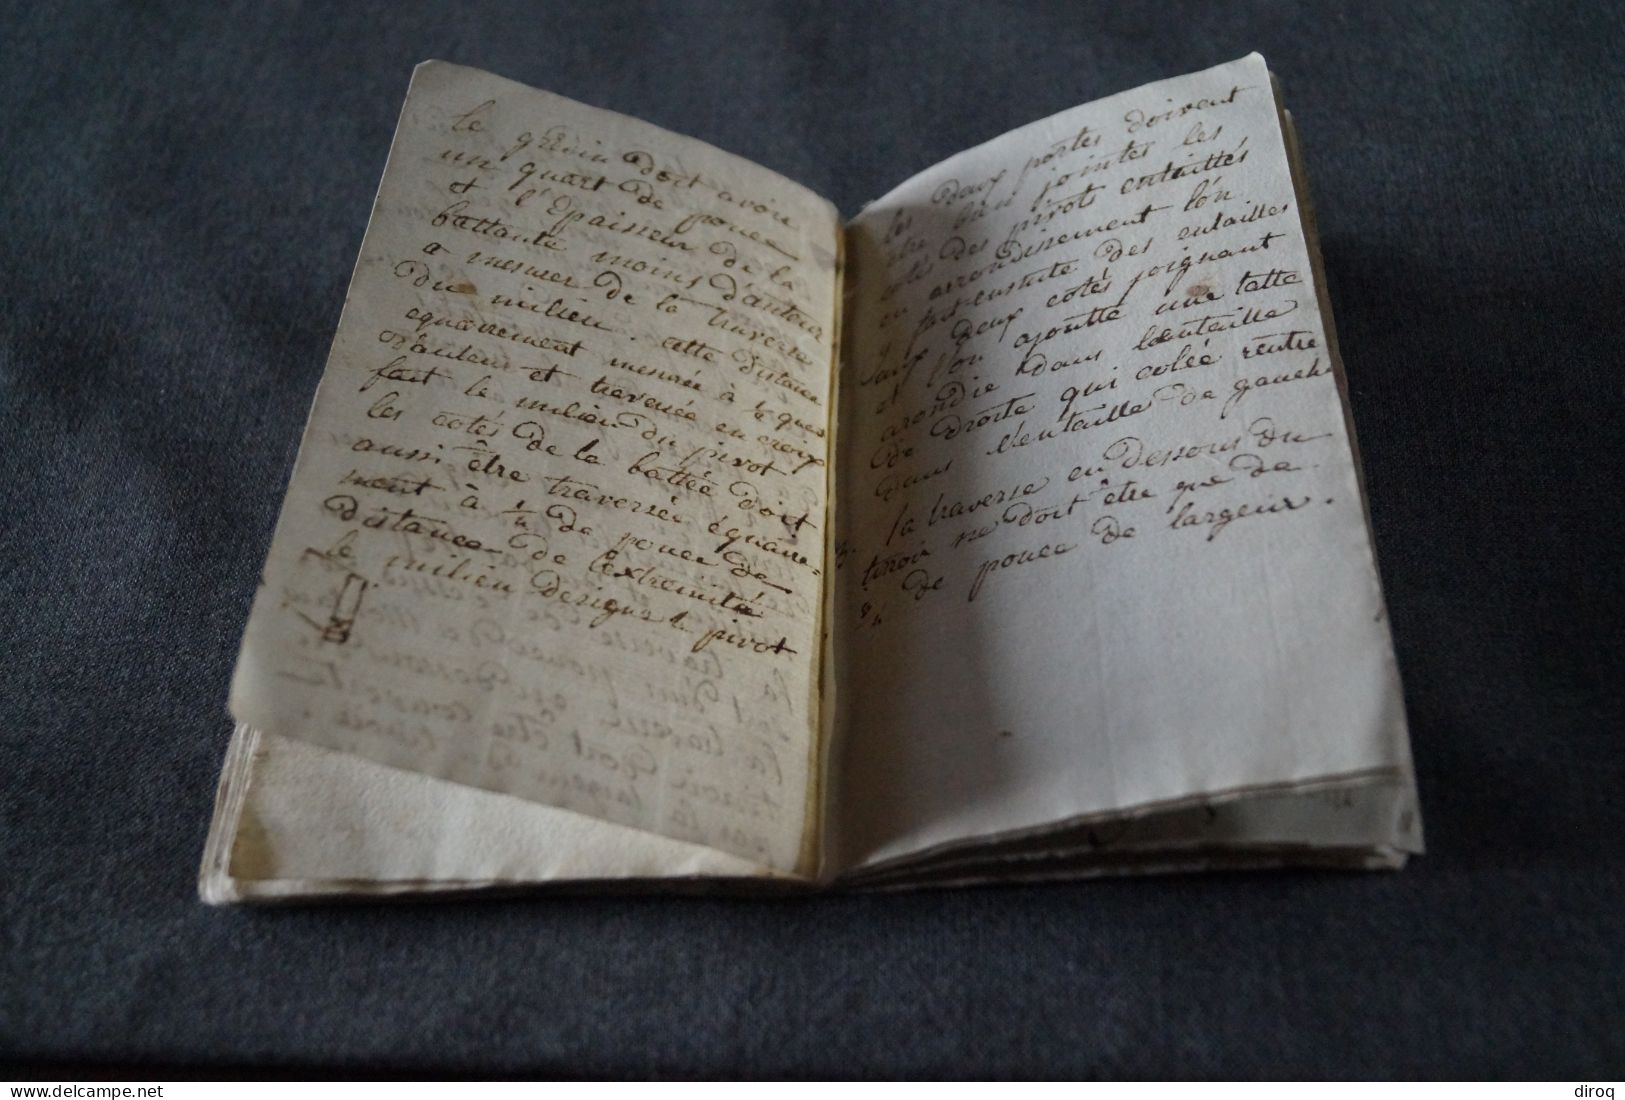 RARE unique manuscrit 1812,Oeuvres de menuiserie,42 pages, 16 Cm. sur 10 Cm.